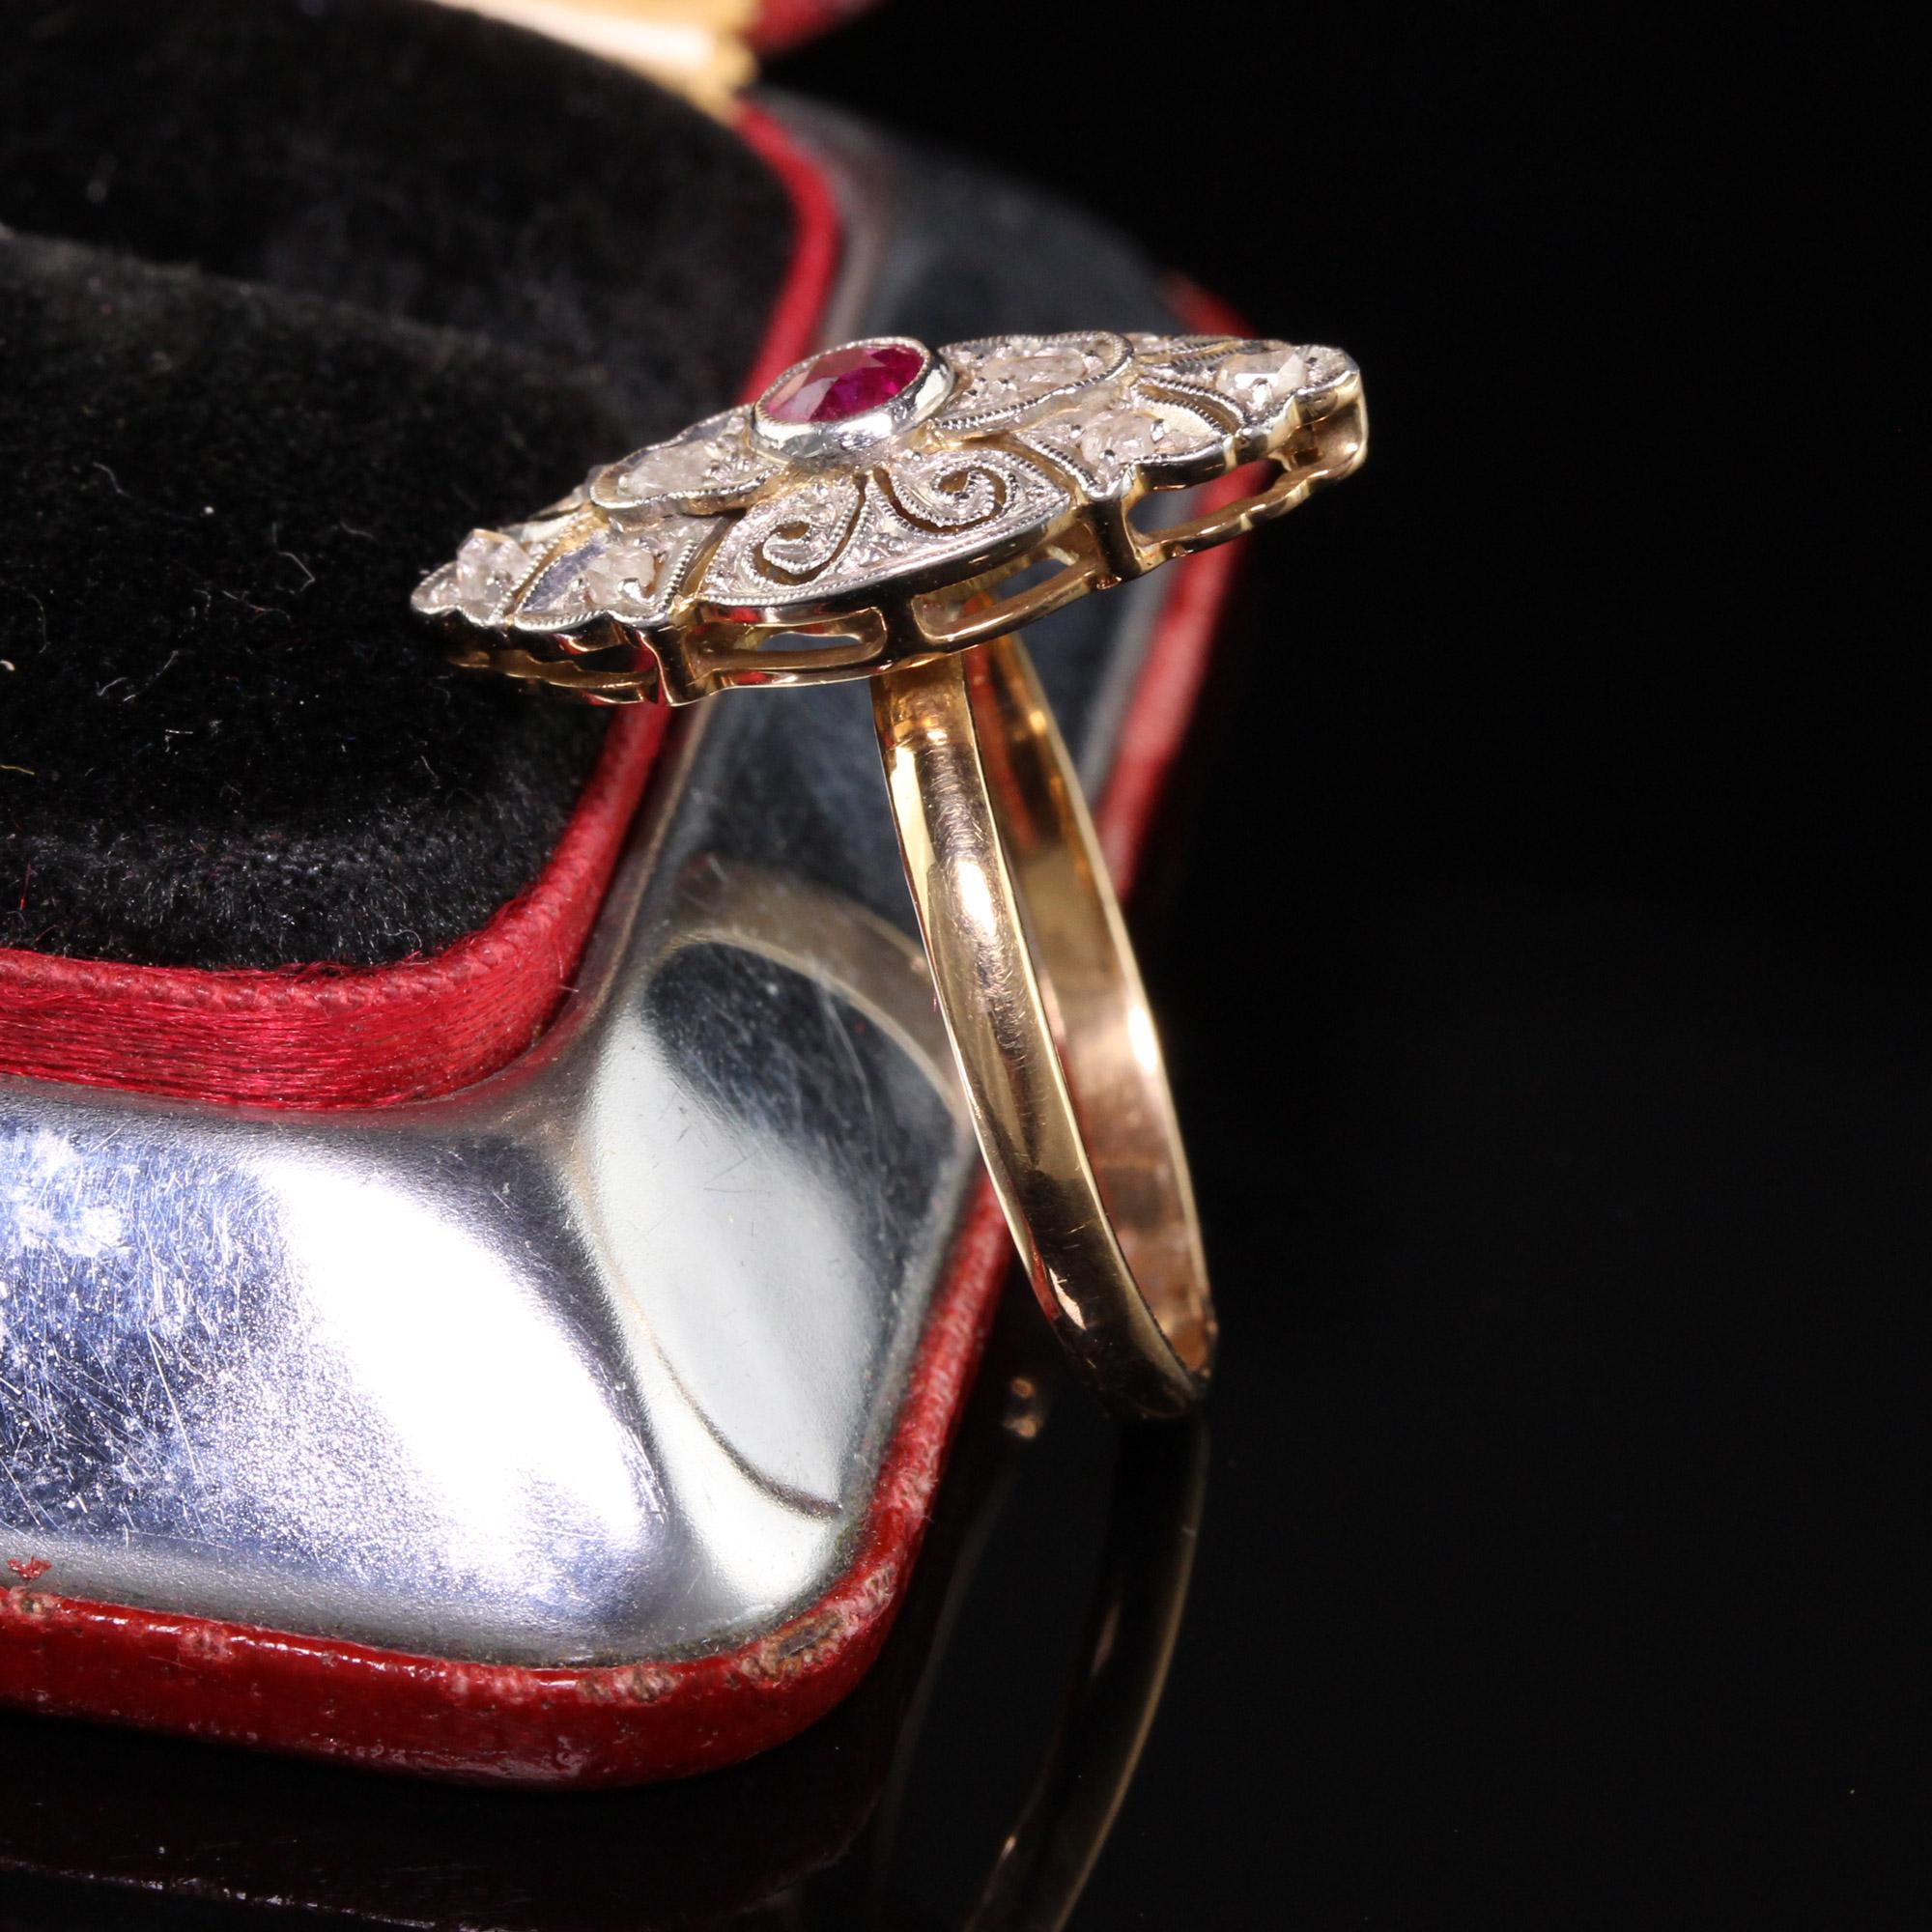 Wunderschöne antike viktorianische 18K Gelbgold Platin Top Rose Cut Diamant und Rubin Ring. Dieser Ring hat ein schönes Aussehen und ein niedriges Profil am Finger.

Artikel #R0773

Metall: 18K Gelbgold und Platin

Gewicht: 3,3 Gramm

Gesamtgewicht